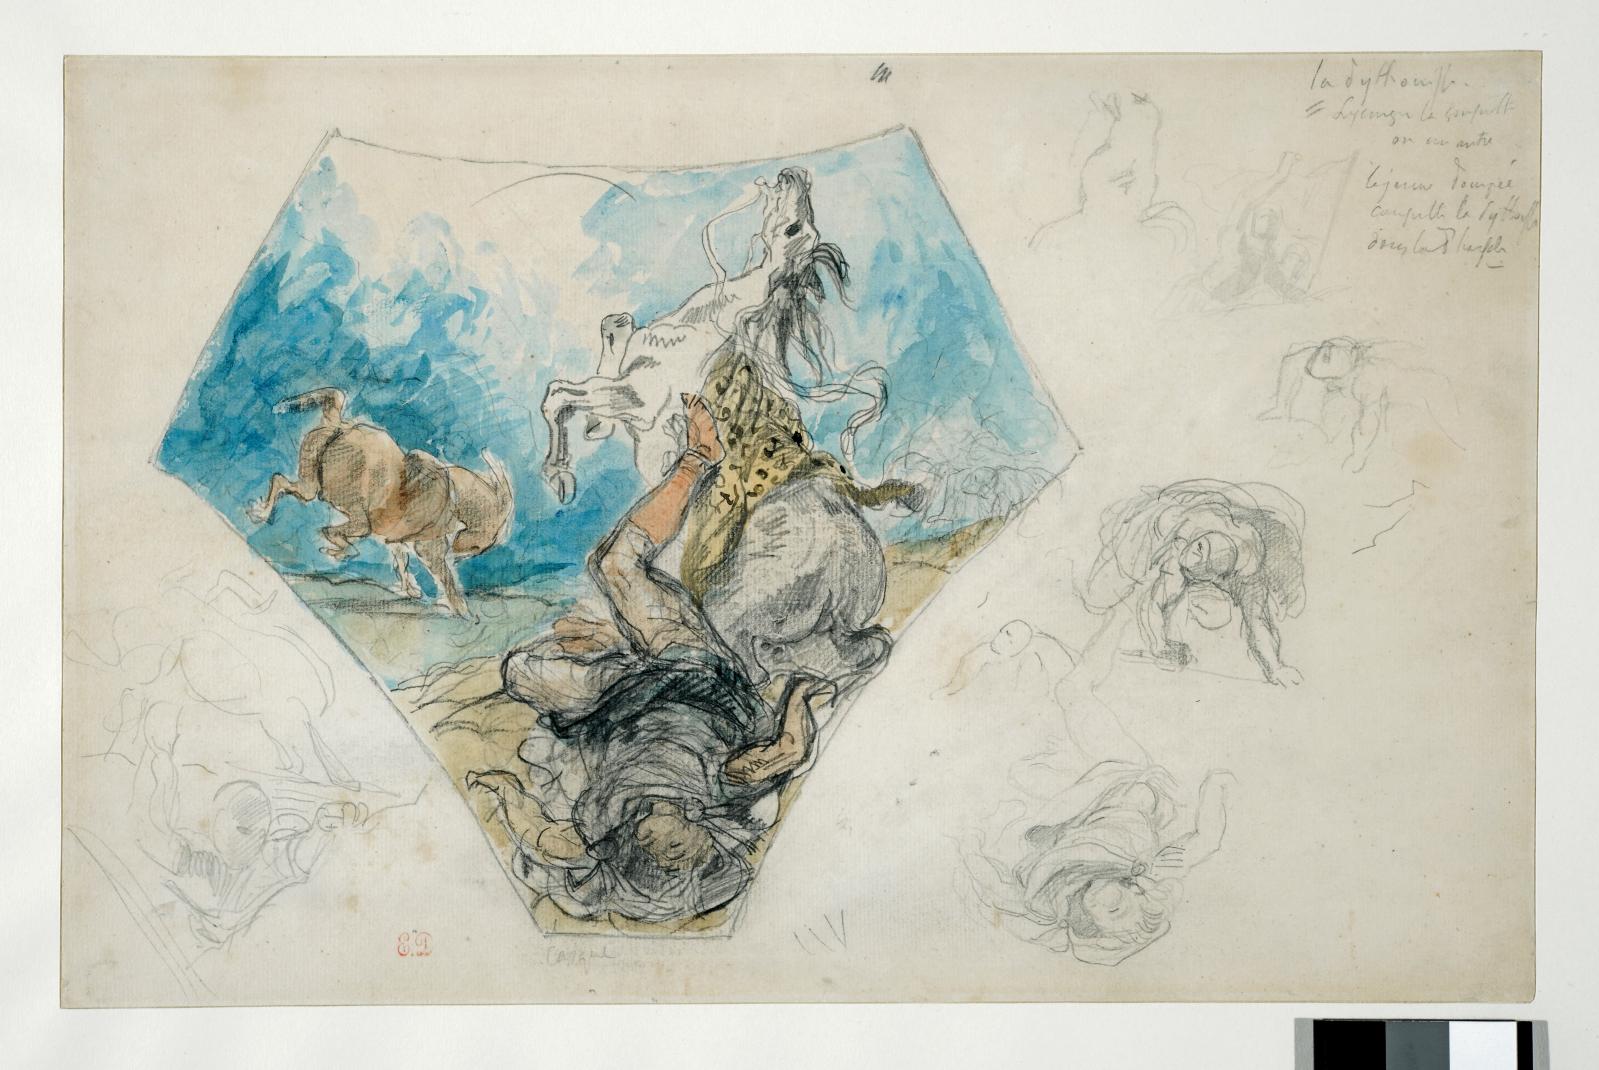 Eugène Delacroix (1798-1863), Saint Paul renversé sur la route de Damas, mine de plomb, pierre noire et aquarelle, 25,3 x 39,2 cm, École des beaux-art